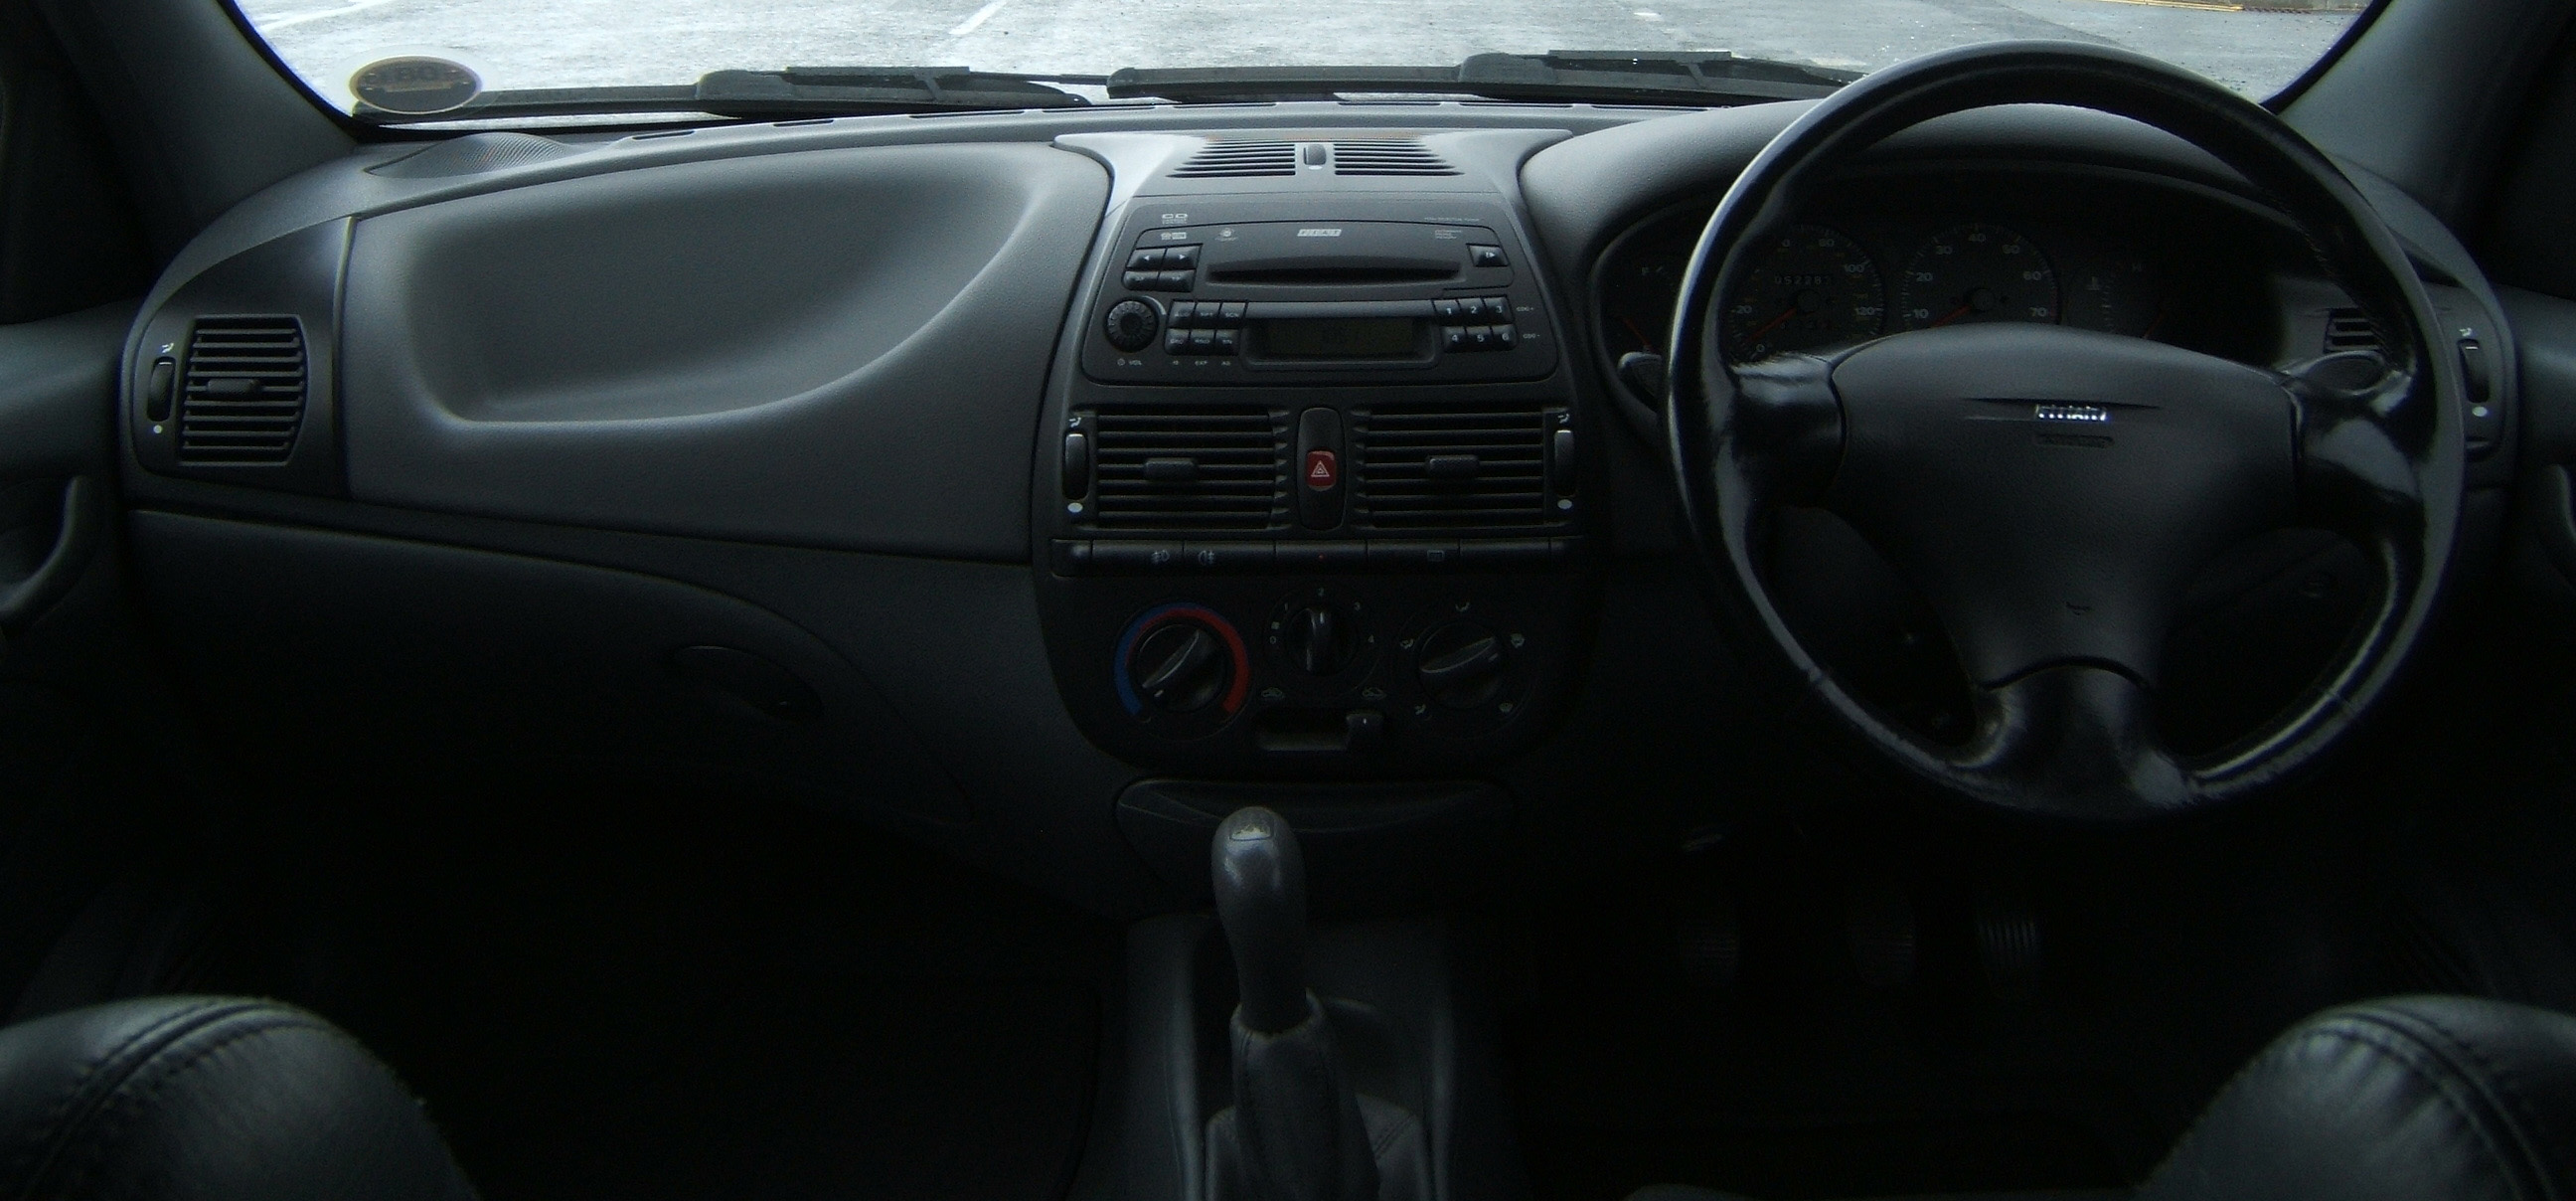 1996 Fiat Bravo 1.8 HLX Ink Black - Dashboard